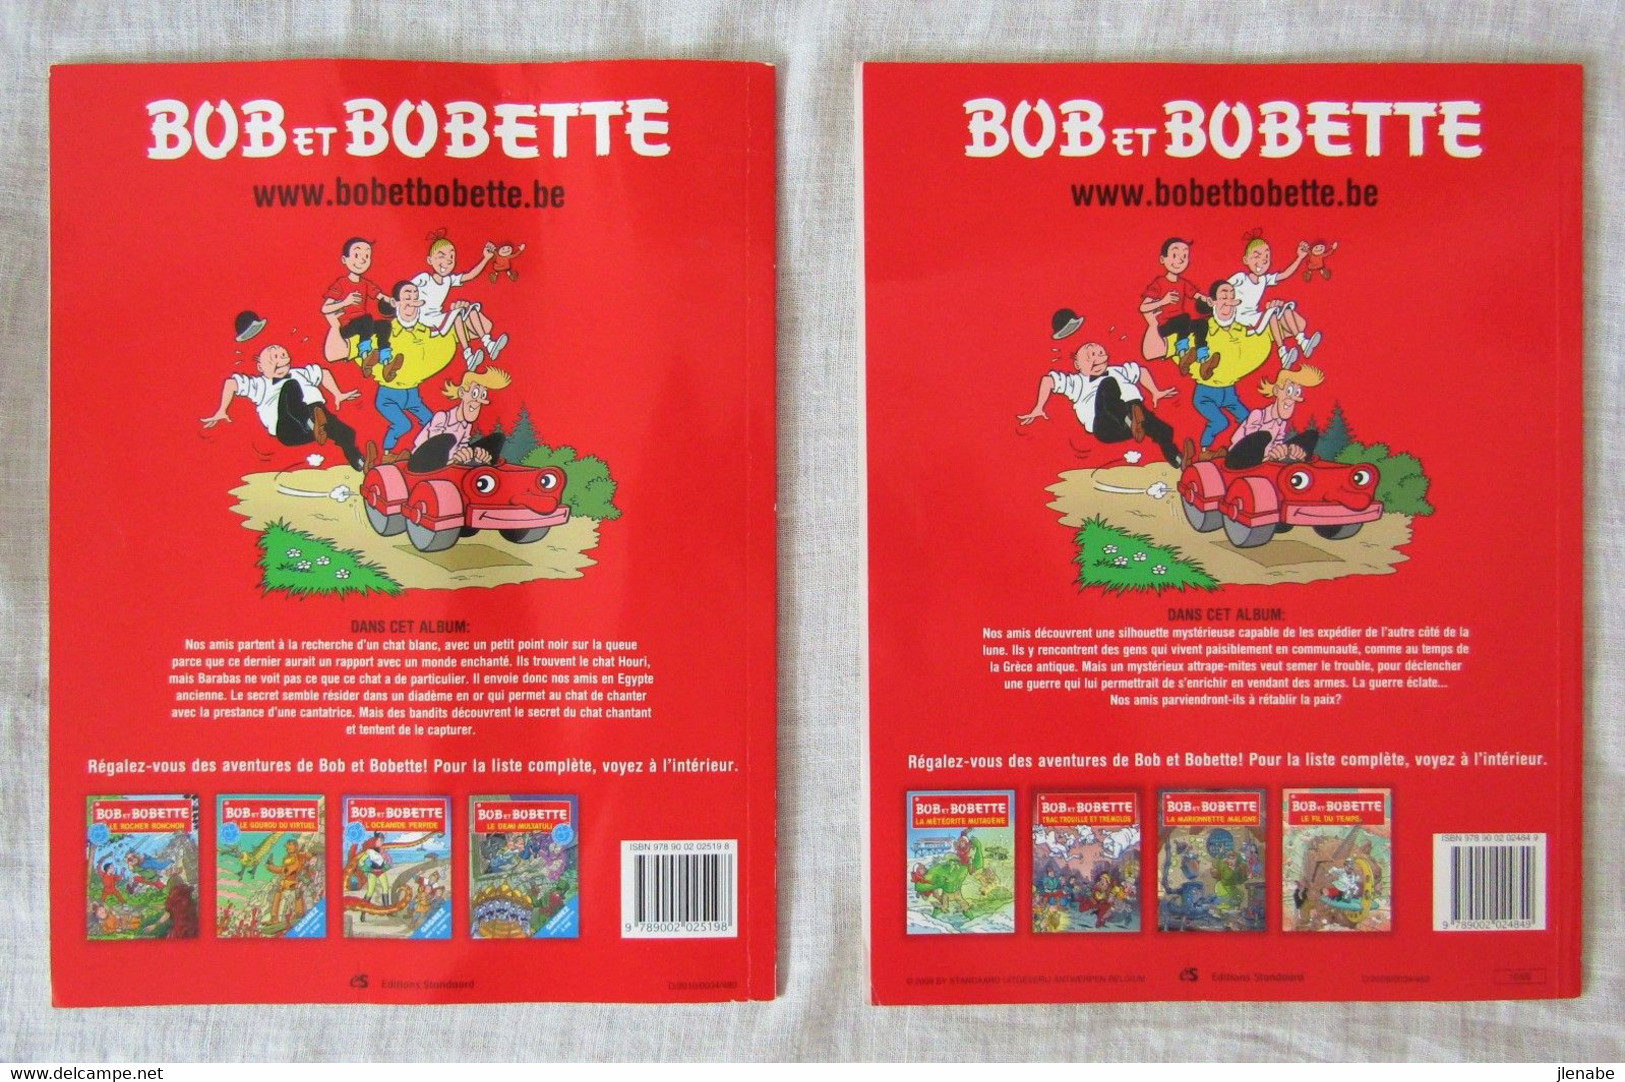 Bob Et Bobette 142 Et 155 Rééditions Récentes Par VANDERSTEEN - Bob Et Bobette